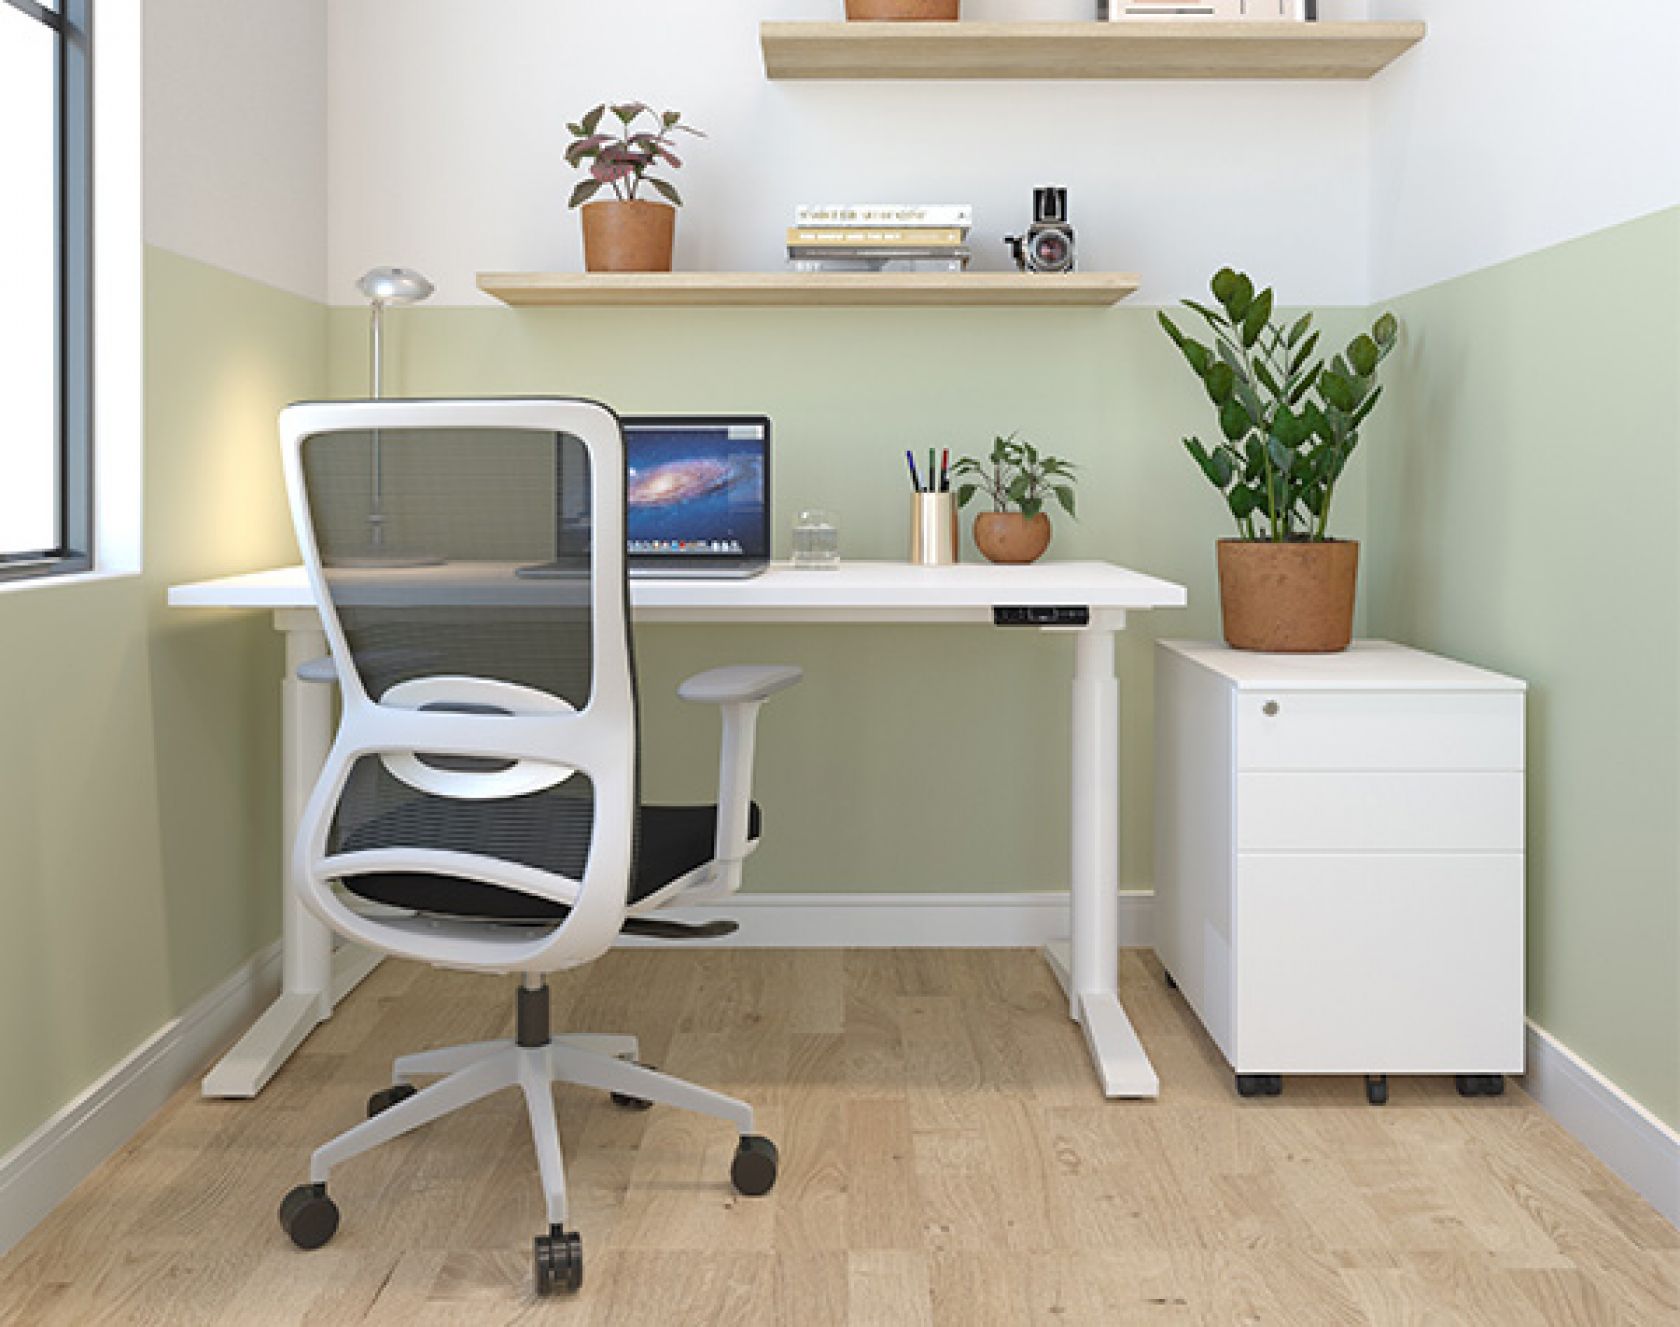 schiavello shop home office furniture krossi desk dash chair